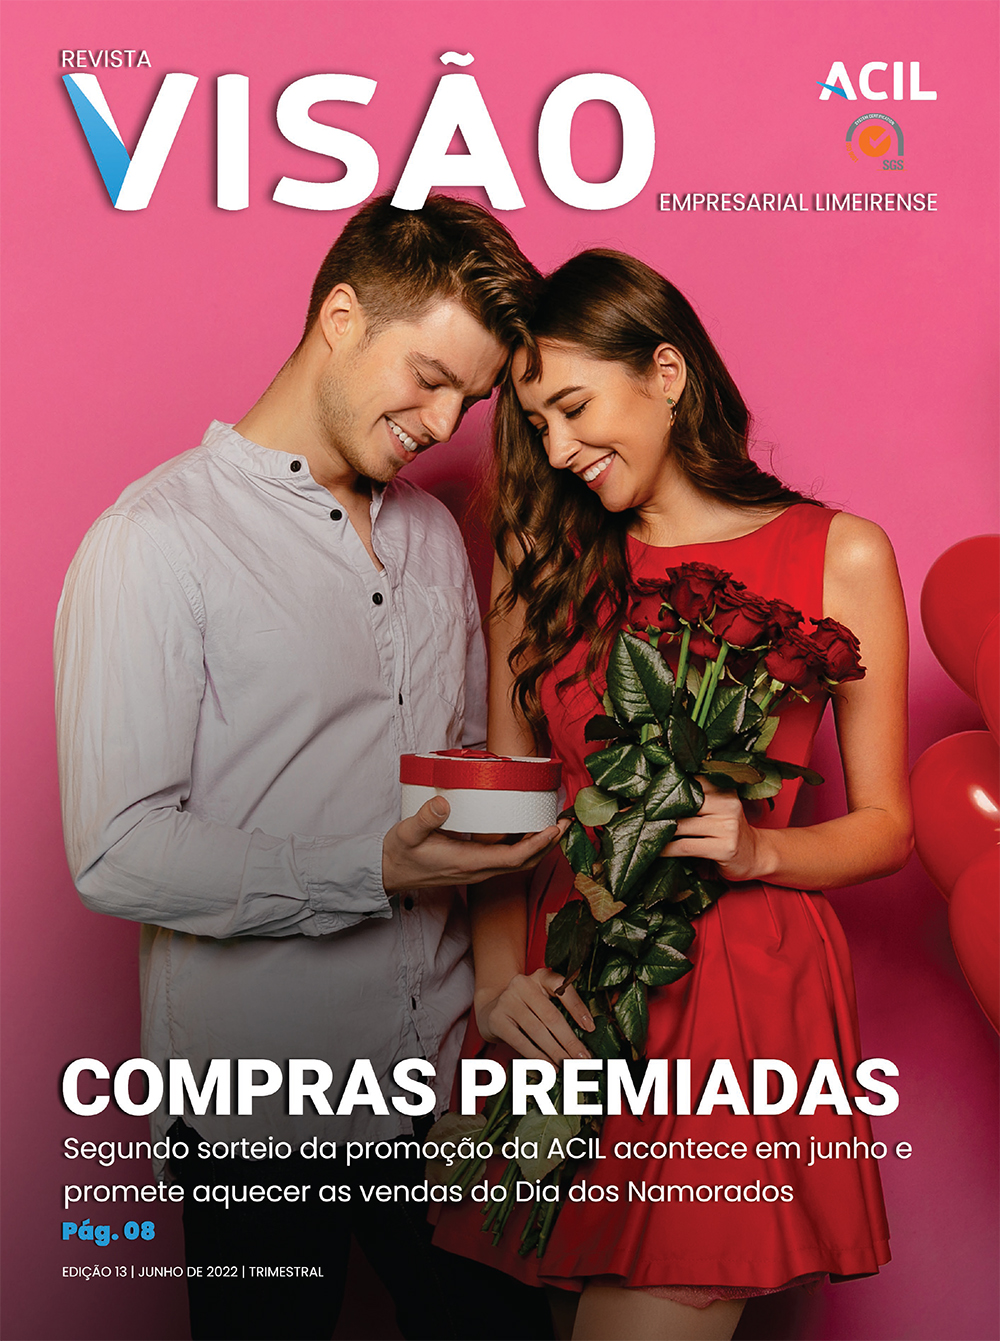 Revista Visão Empresarial Limeirense | Junho